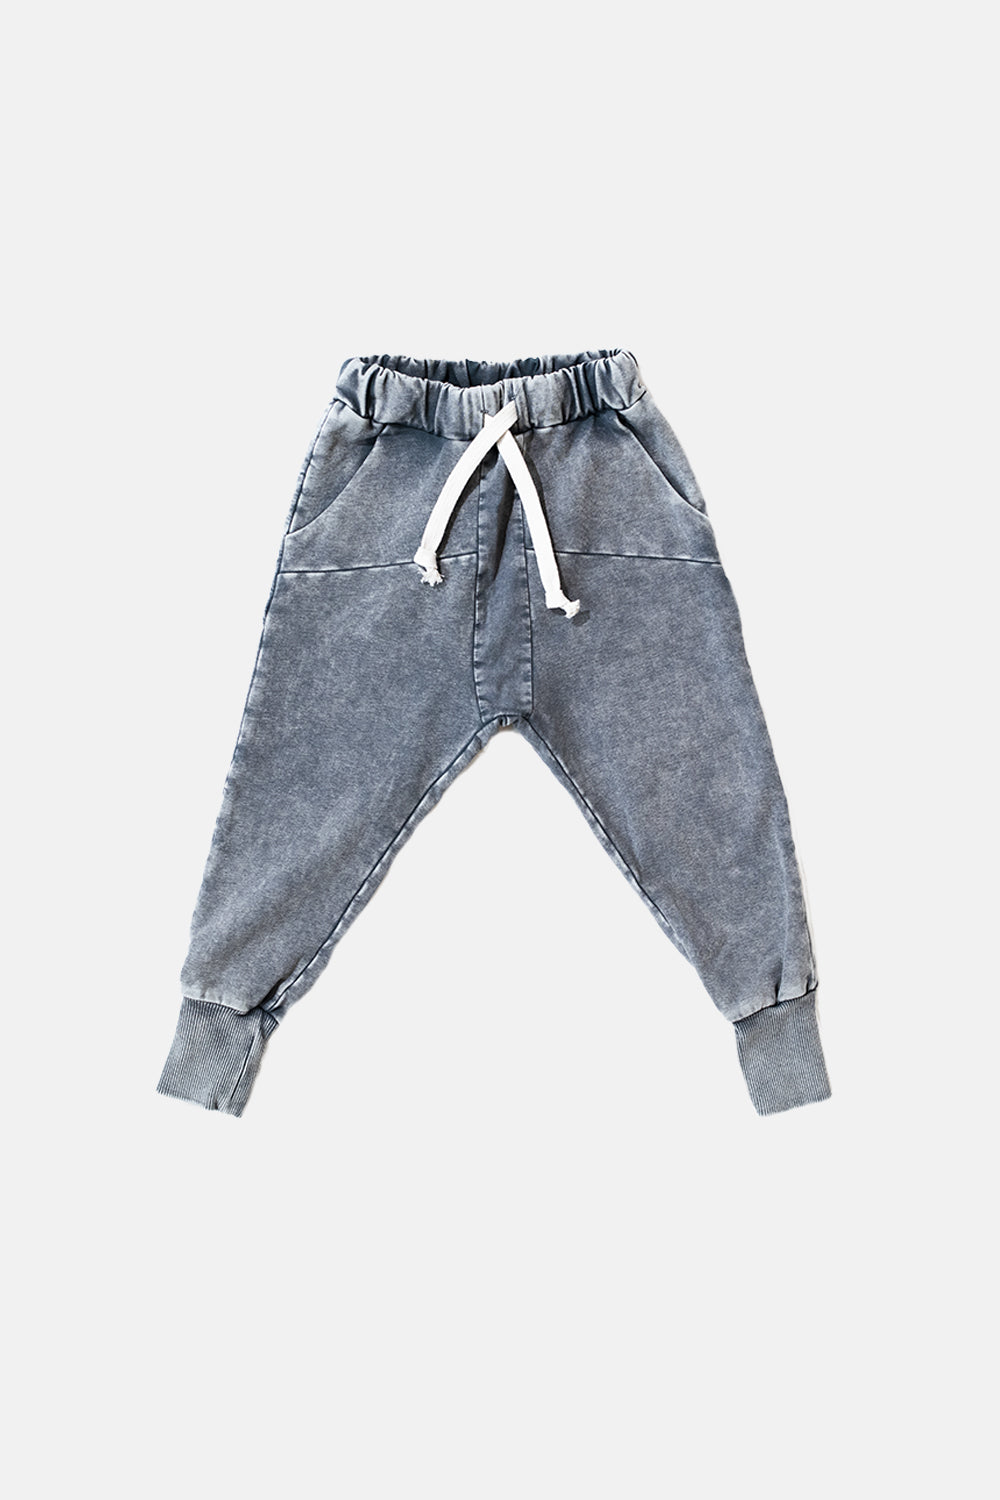 spodnie dziecięce -  STRIPED GRAY PANTS gray